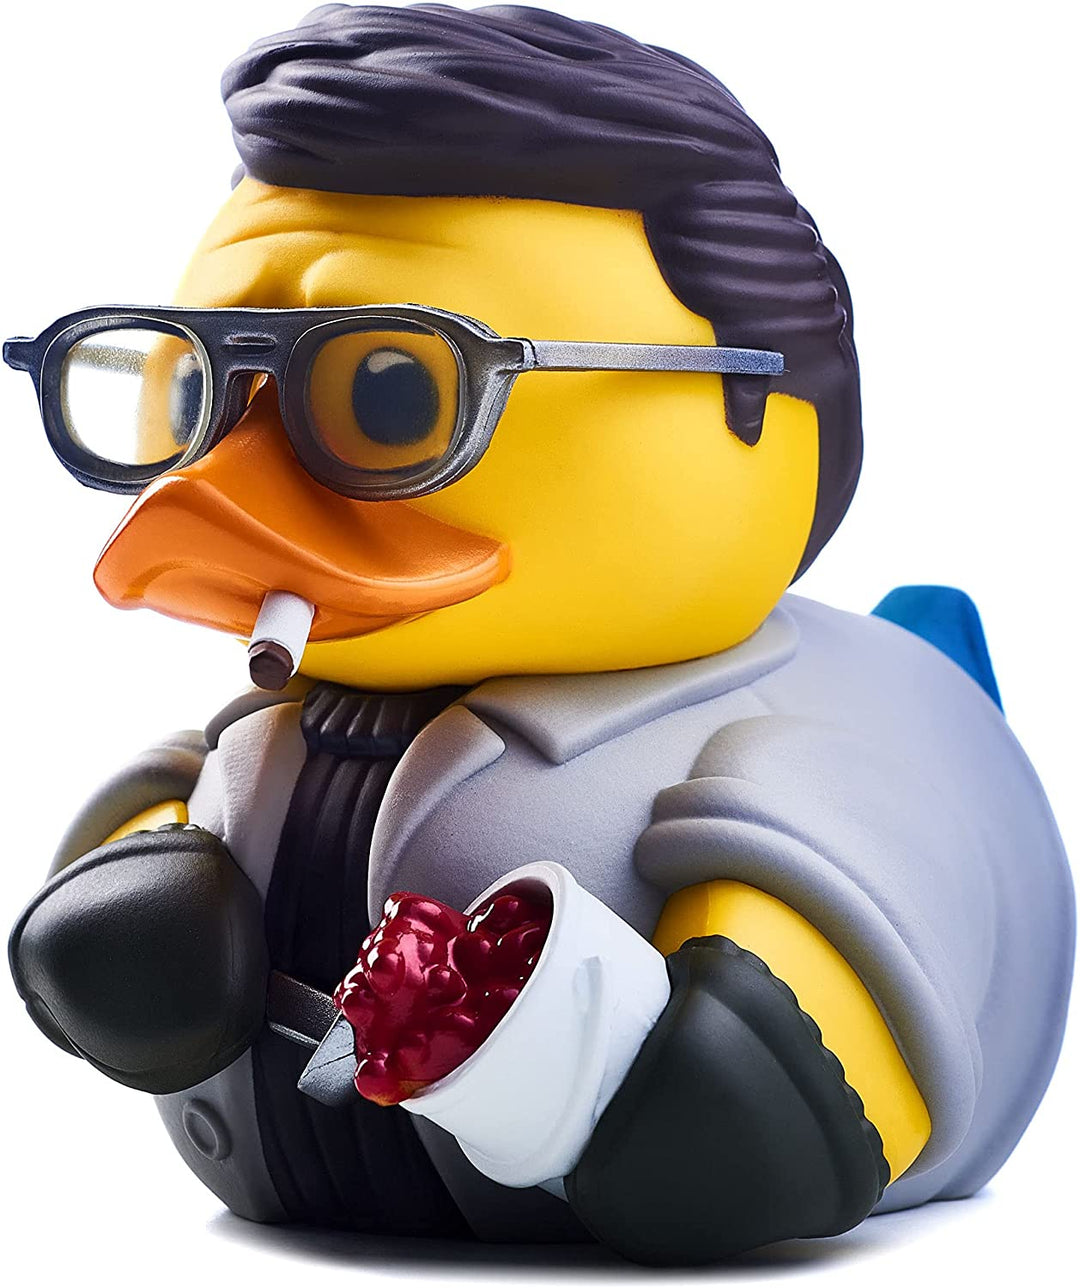 TUBBZ Jaws Martin Brody Duck Figur – Offizielles Jaws Merchandise – Einzigartige Limitierung